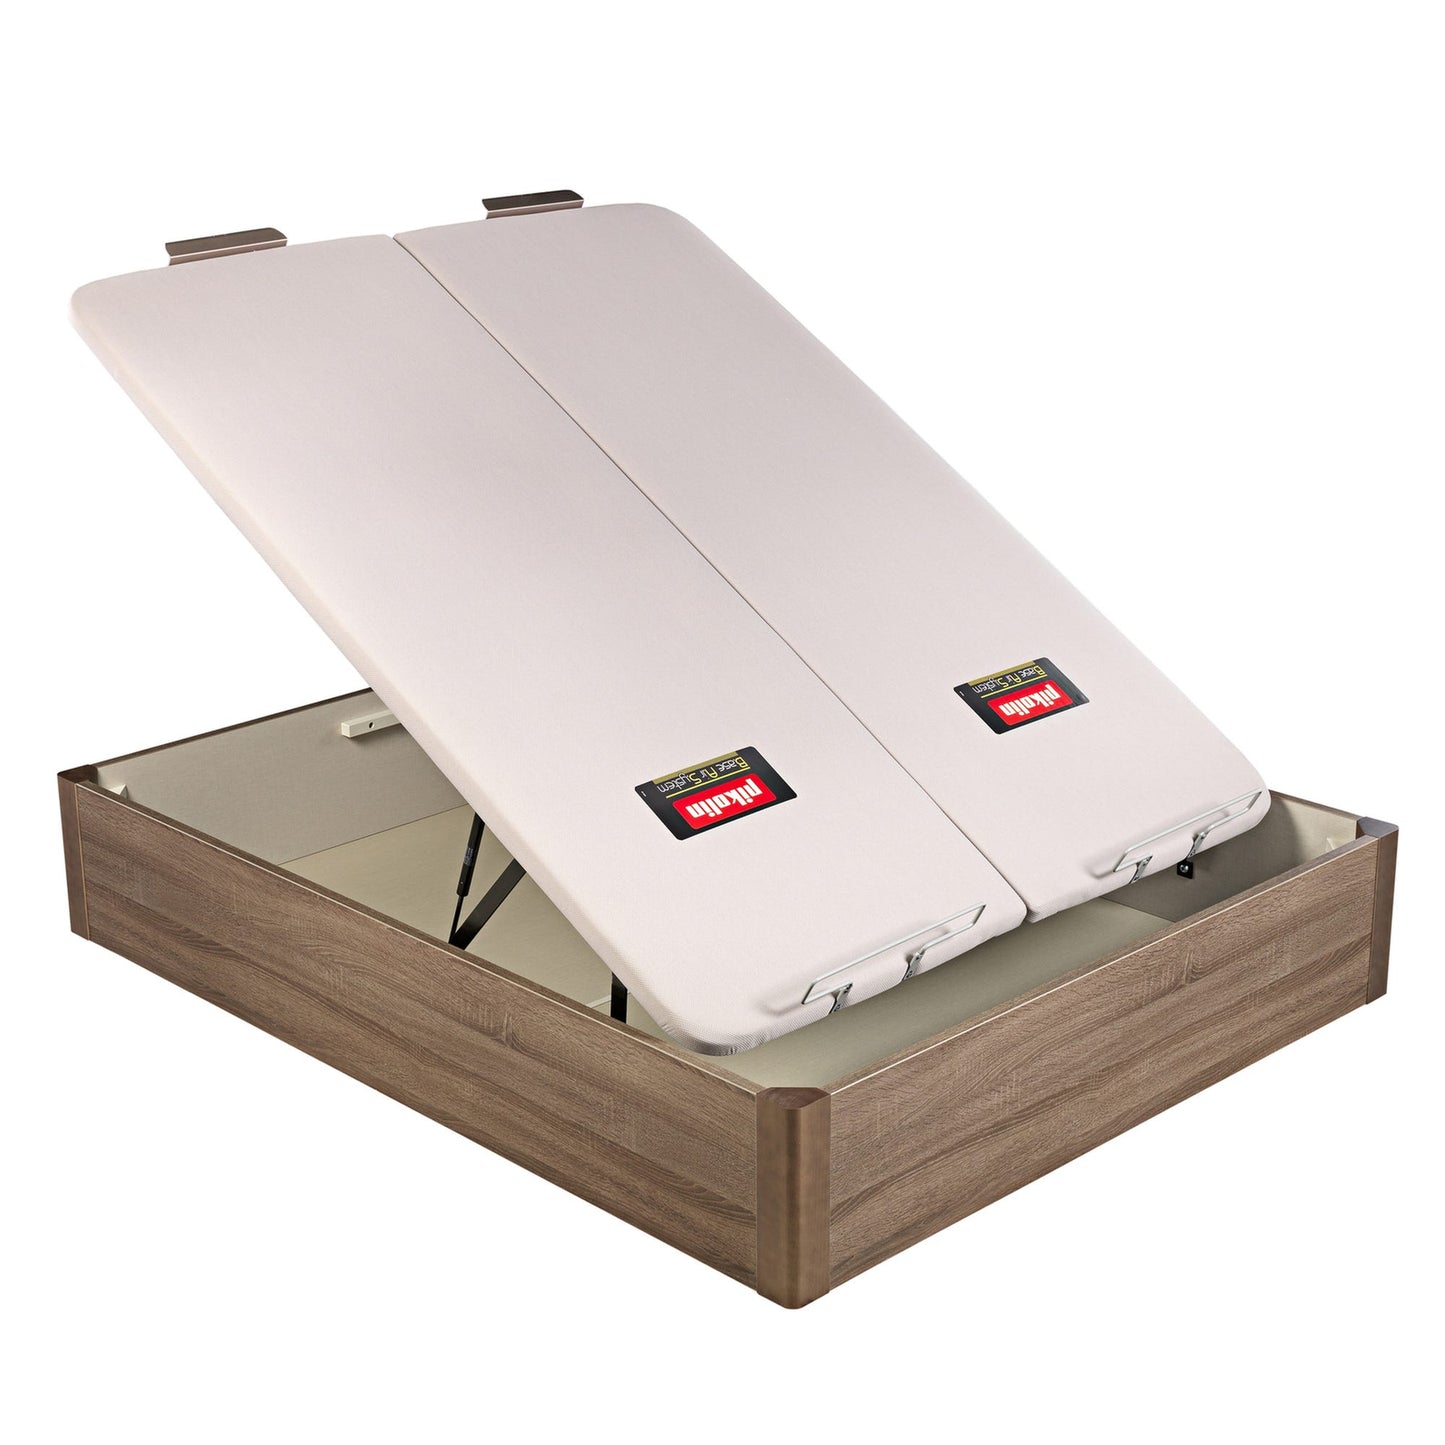 Canapé abatible de madera de tapa doble de color roble - DESIGN - 200x220